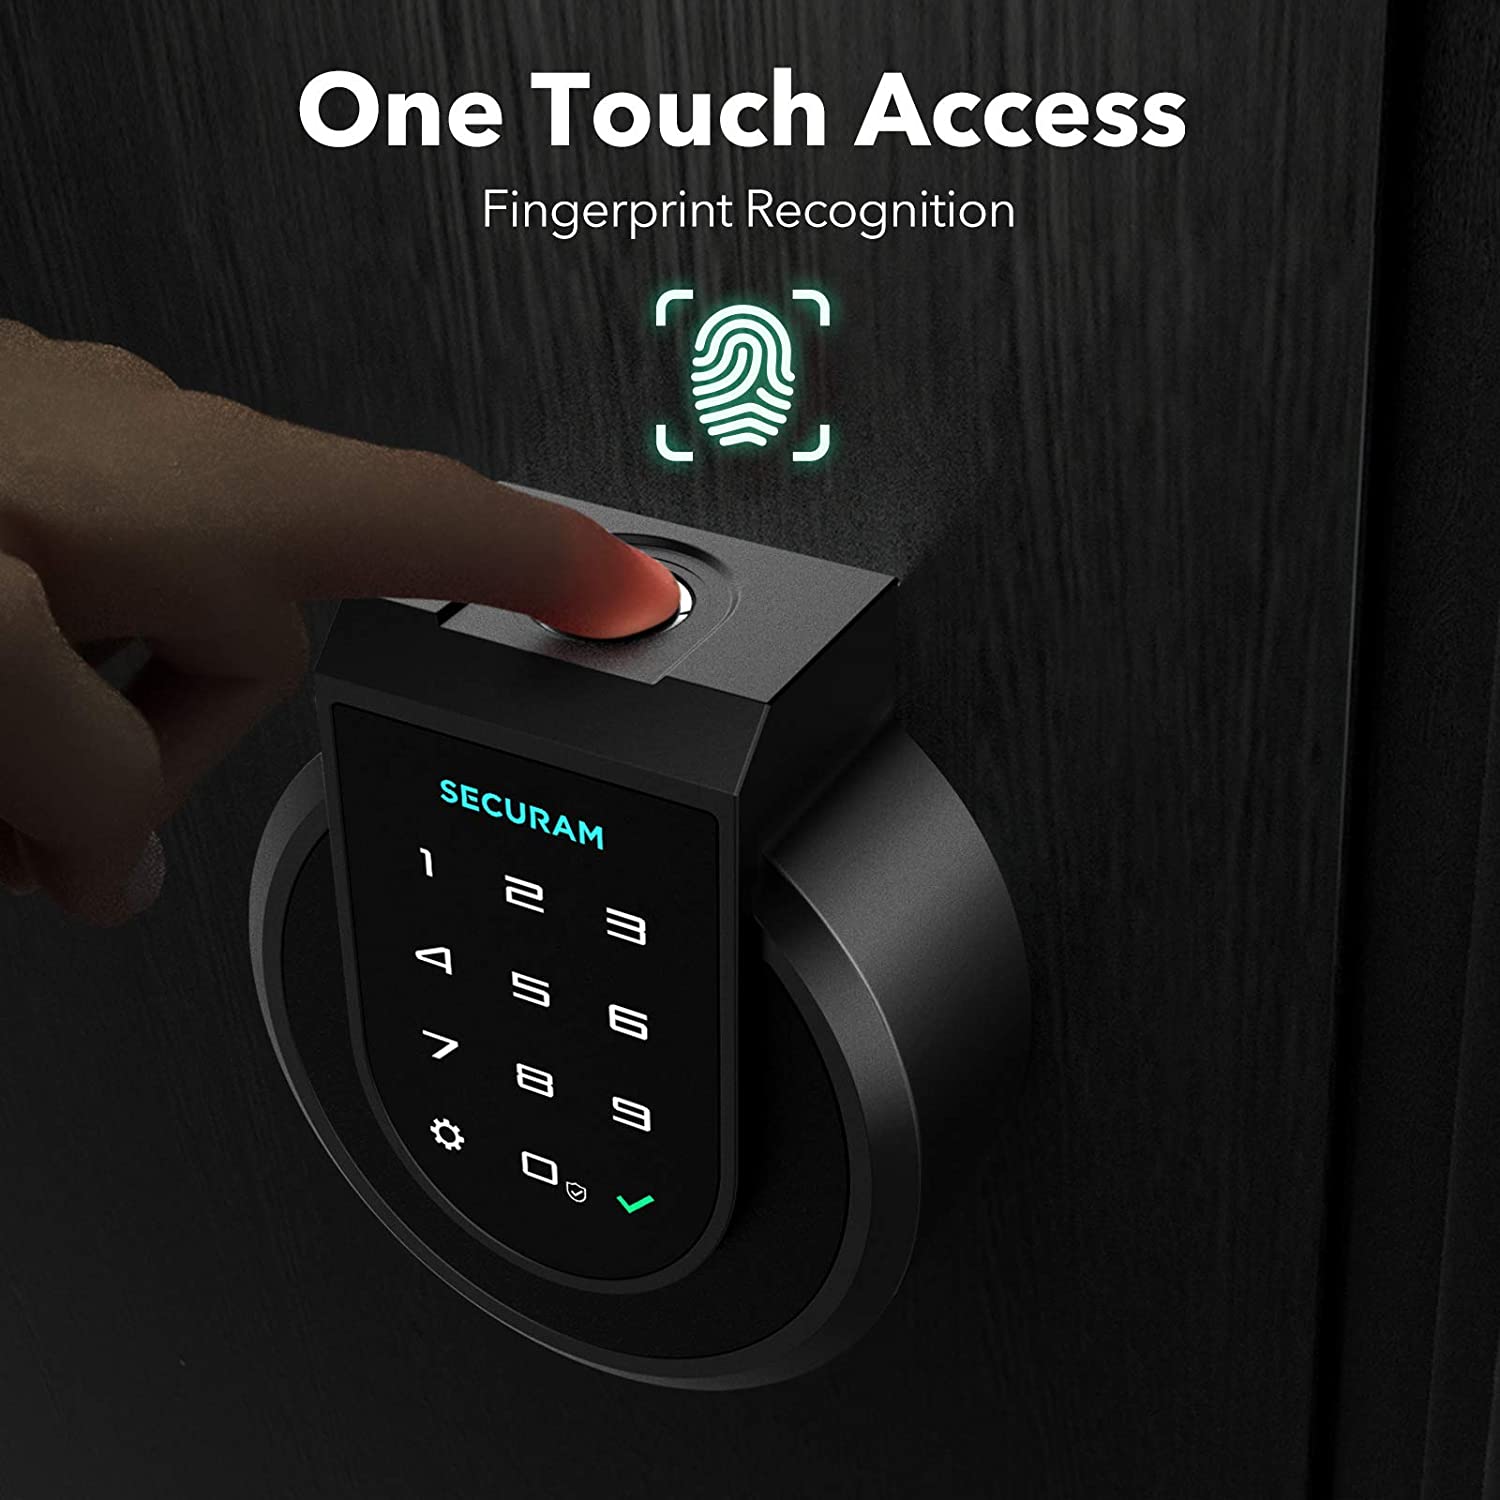 SECURAM Touch - Fingerprint Smart Lock is a one touch access fingerprint door lock.